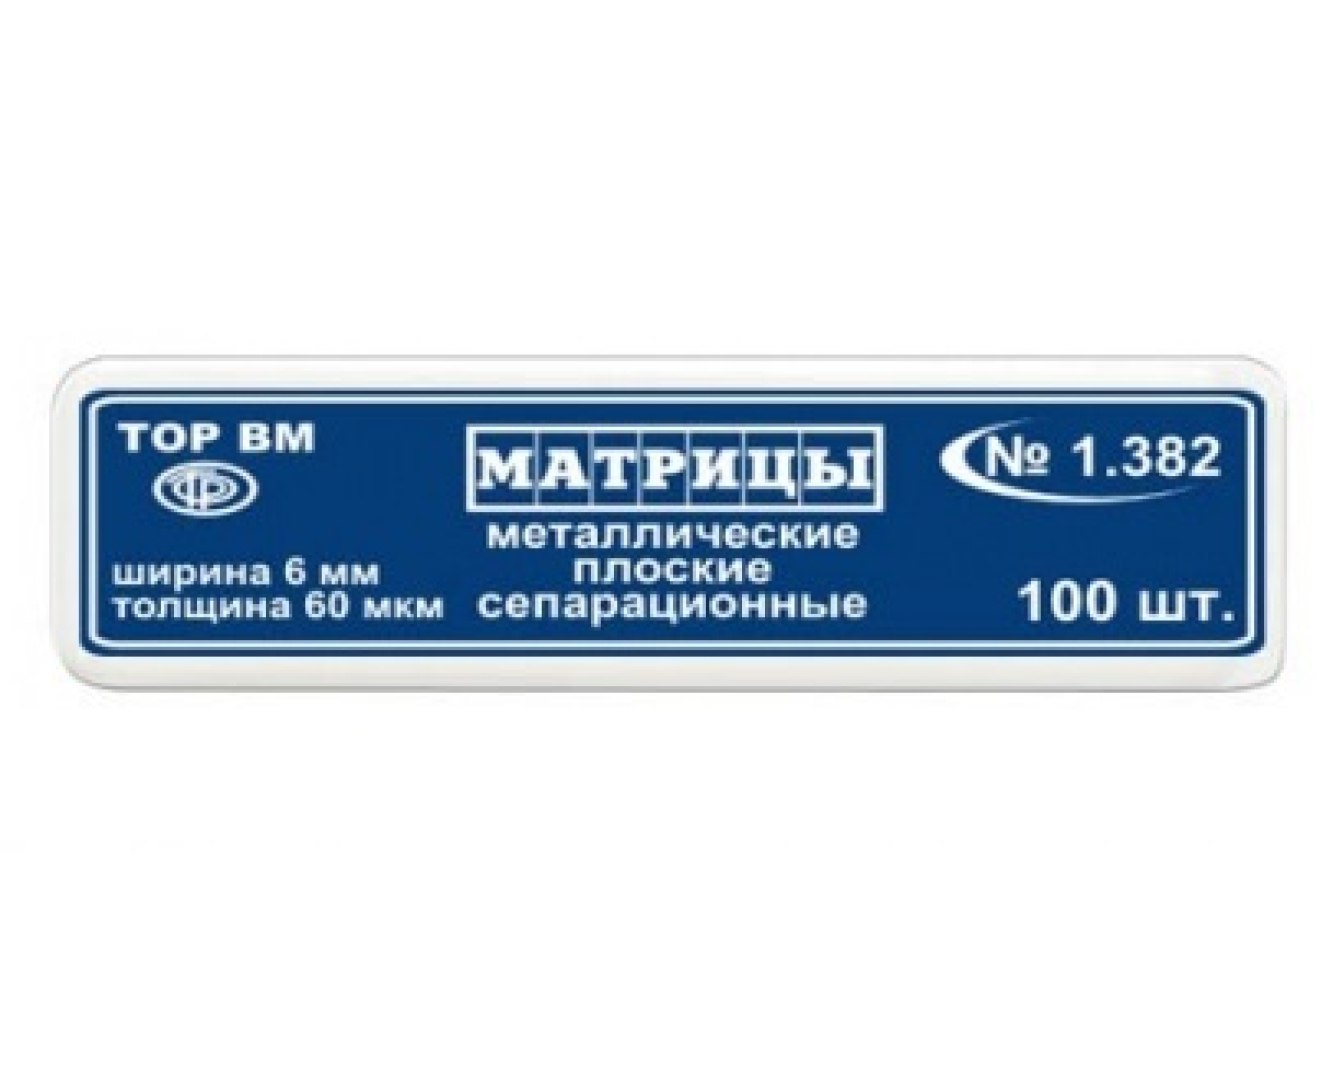 Матрицы металлические, плоские, сепарационные, 1.382, ТОР ВМ (Россия)